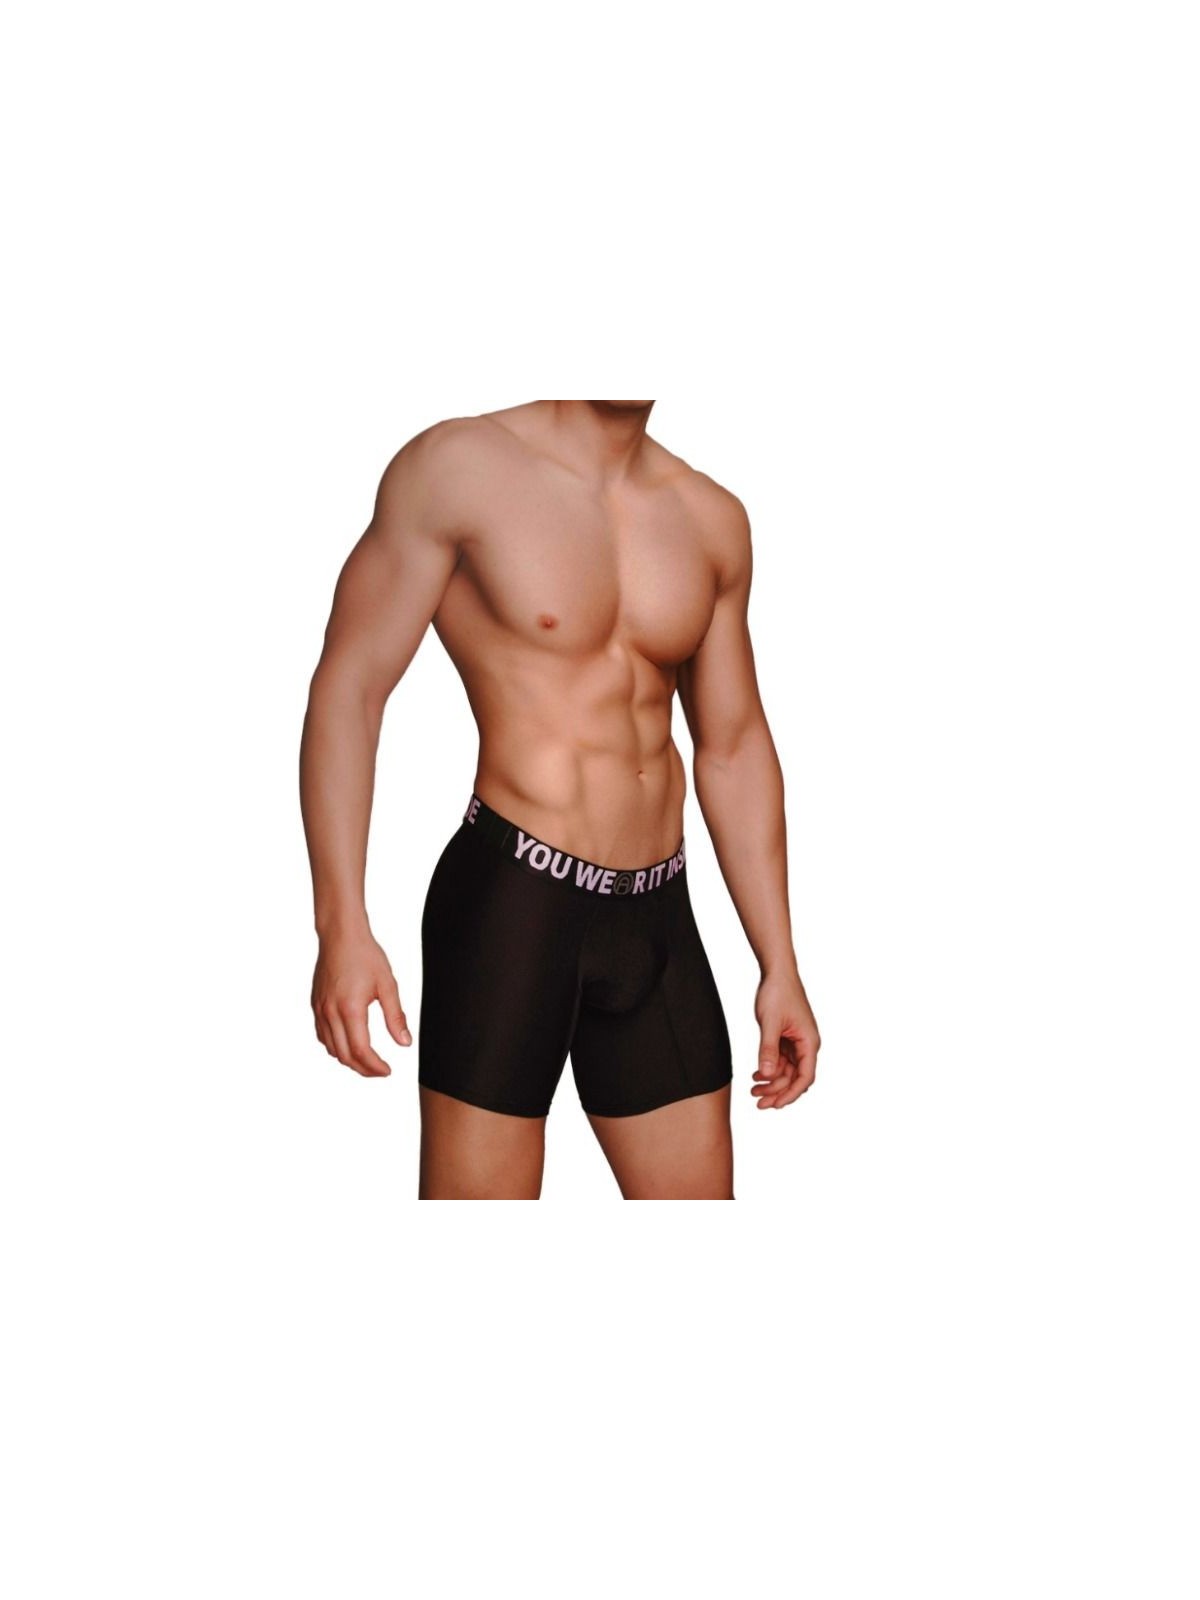 Macho Ms077 Bóxer Deportivo Largo Negro - Comprar Bóxer sexy Macho Underwear - Bóxers sexys (1)